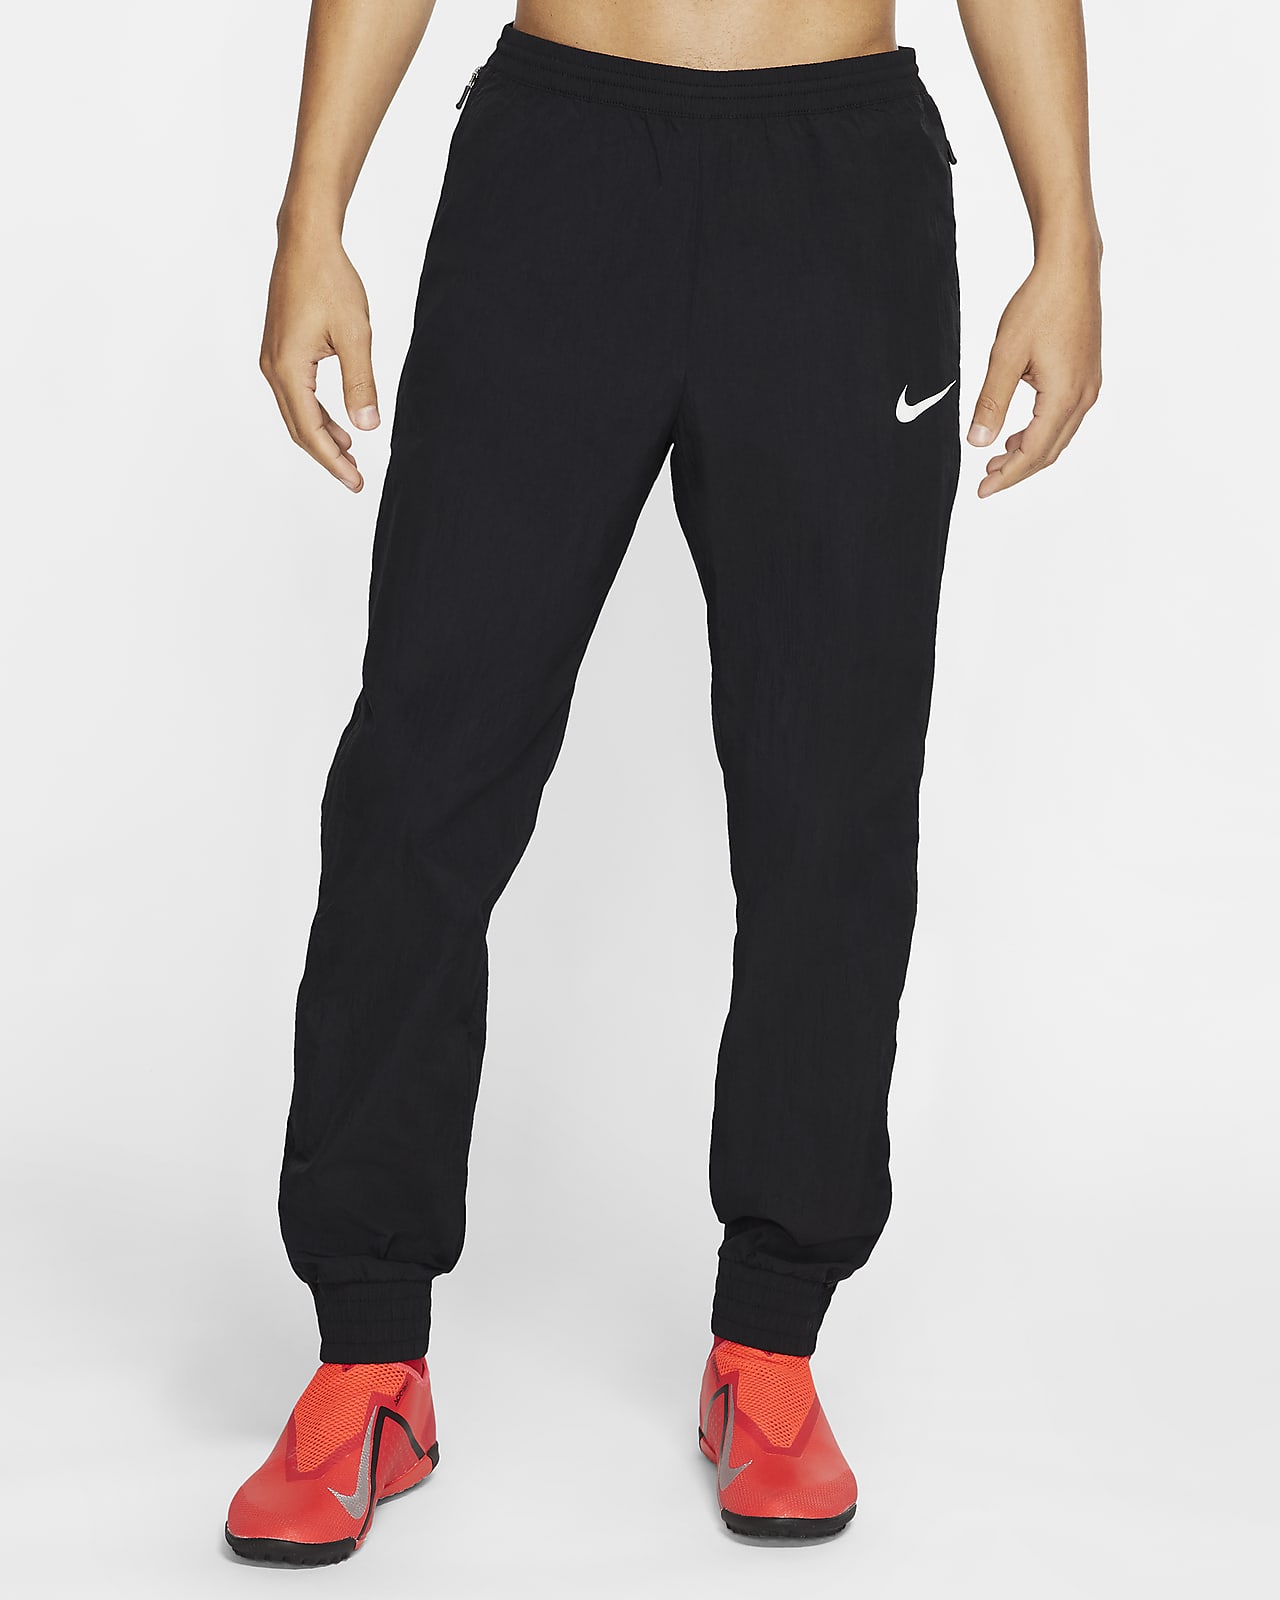 Pantalones tejidos de fútbol para hombre Nike F.C.. Nike.com